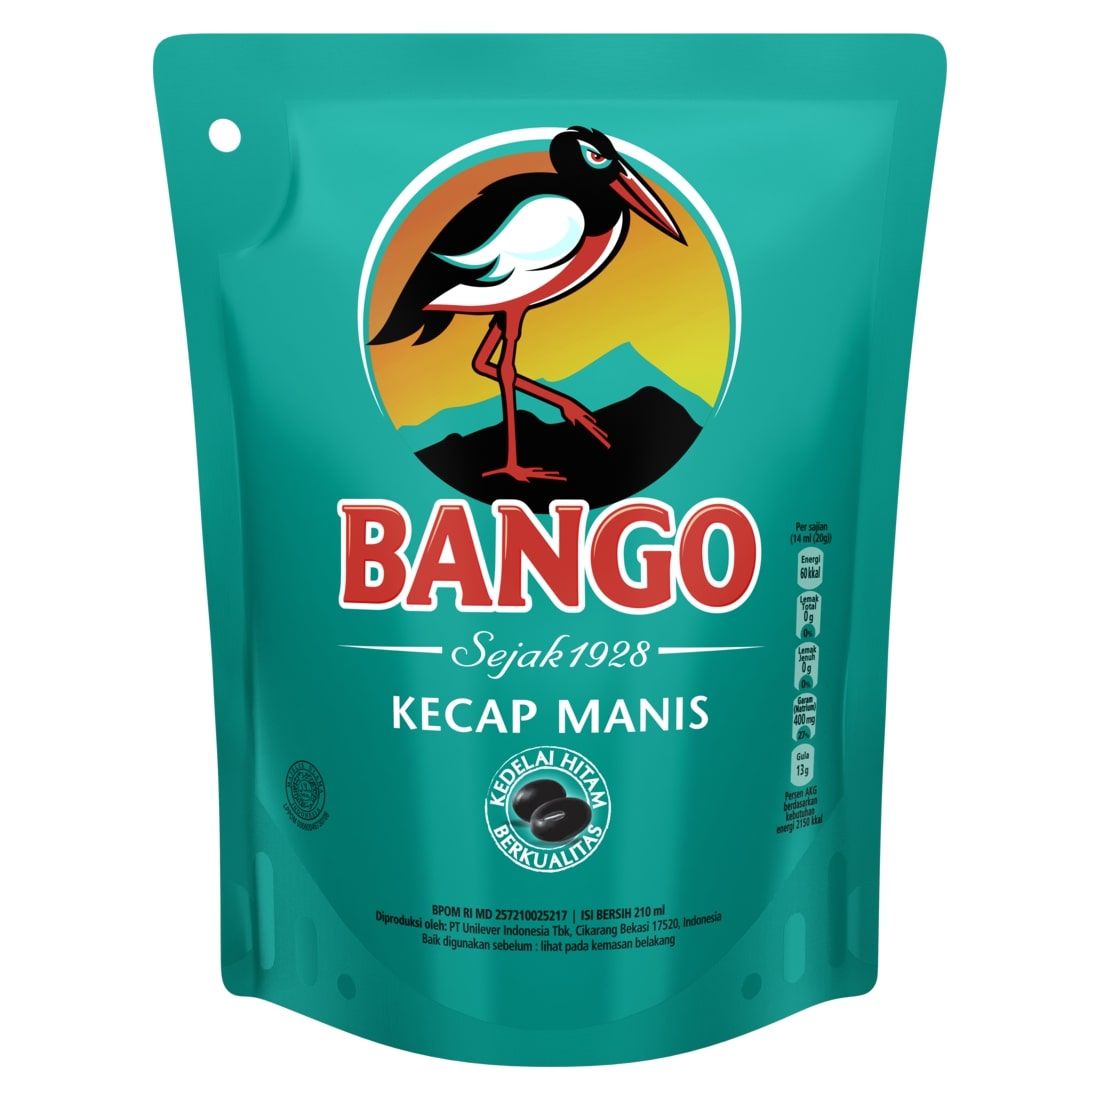 Paket Bango 2 pcs Free Mangkuk - 2